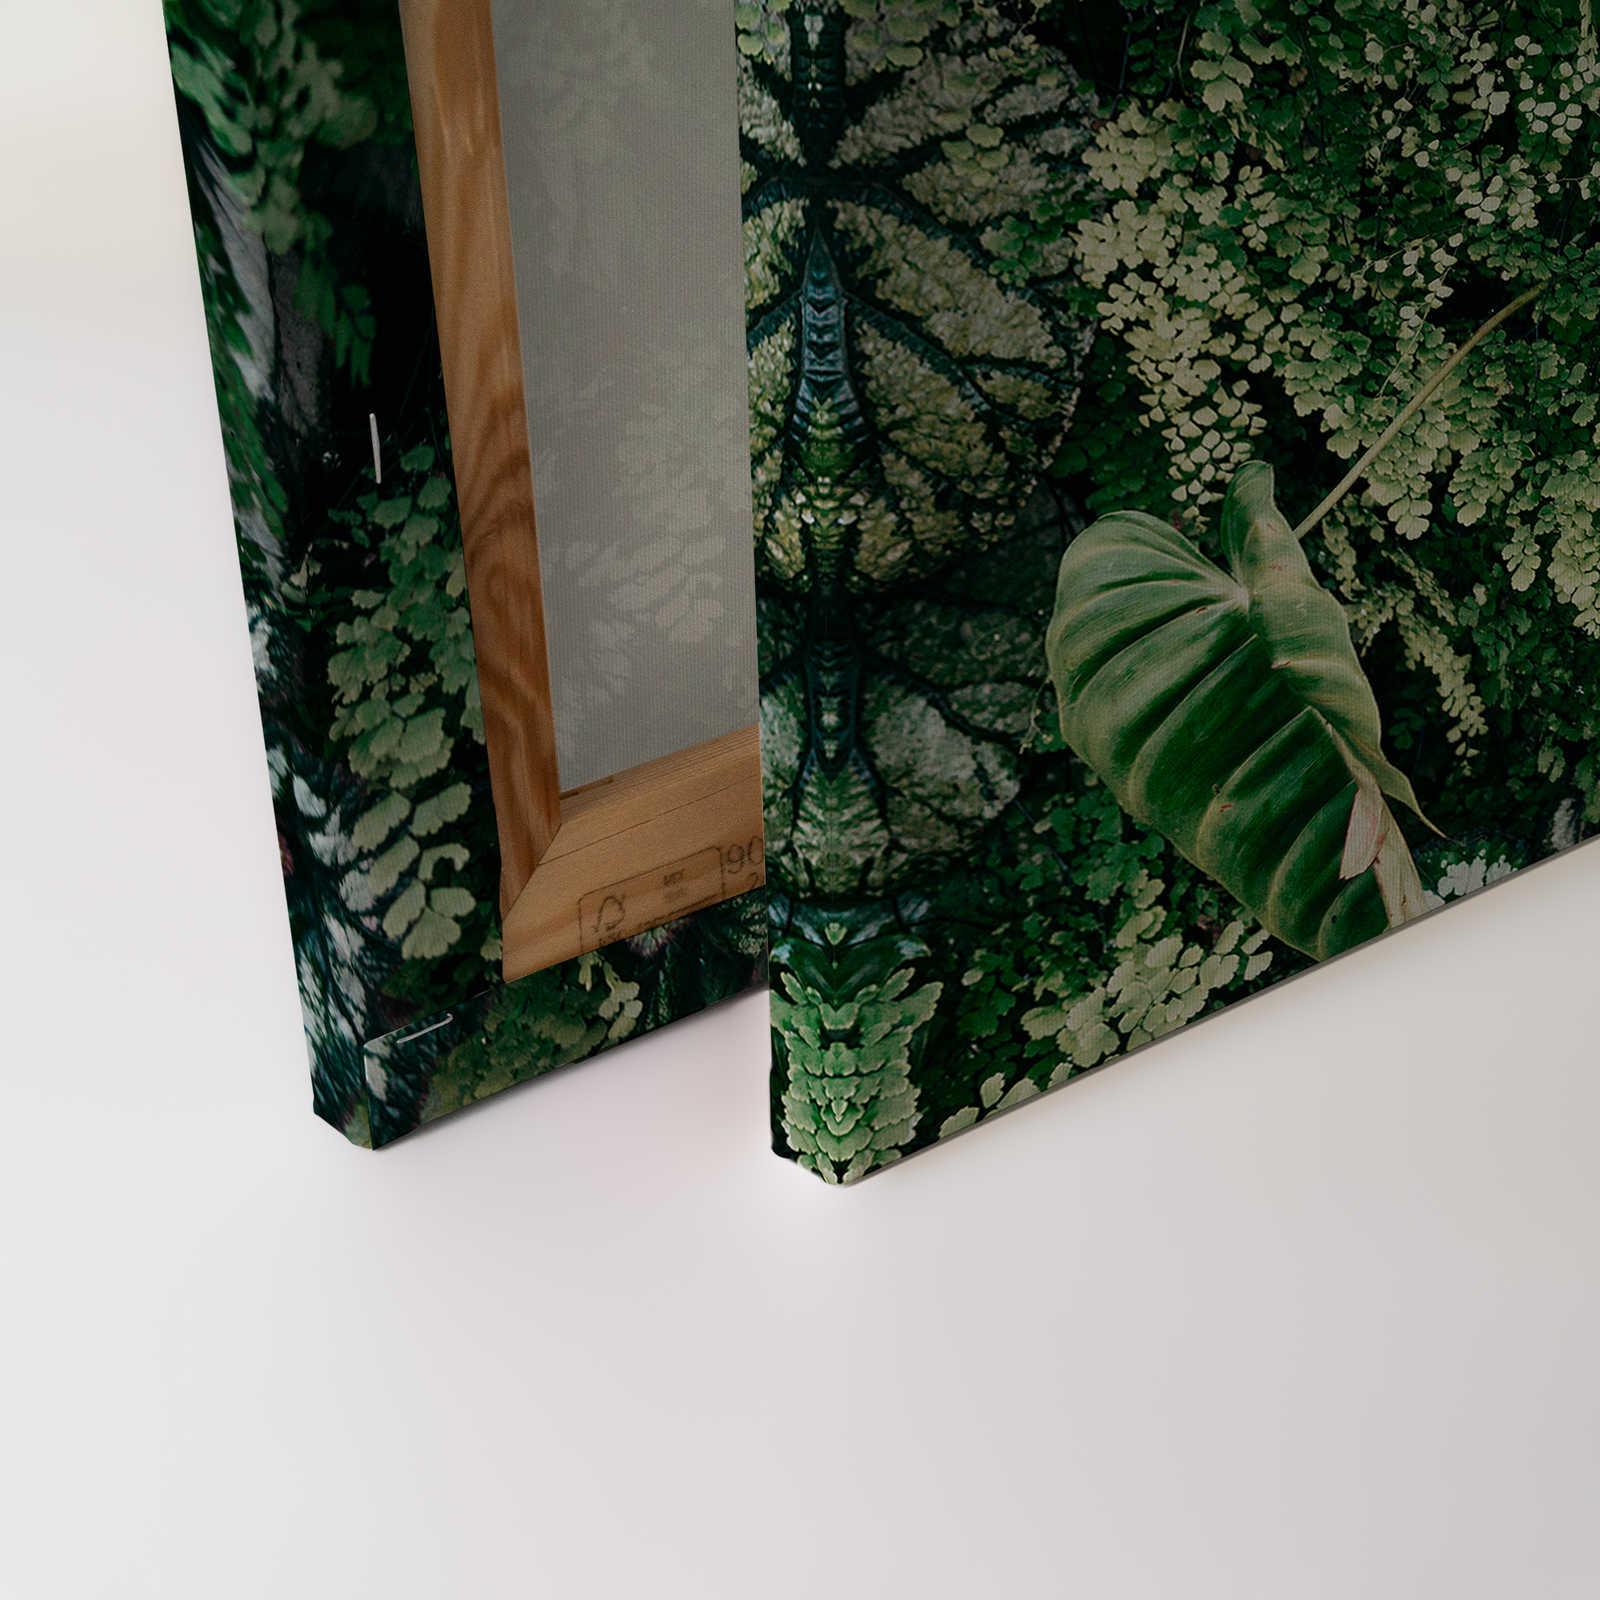             Deep Green 2 - Pintura sobre lienzo Matorral de follaje, helechos y plantas colgantes - 1,20 m x 0,80 m
        